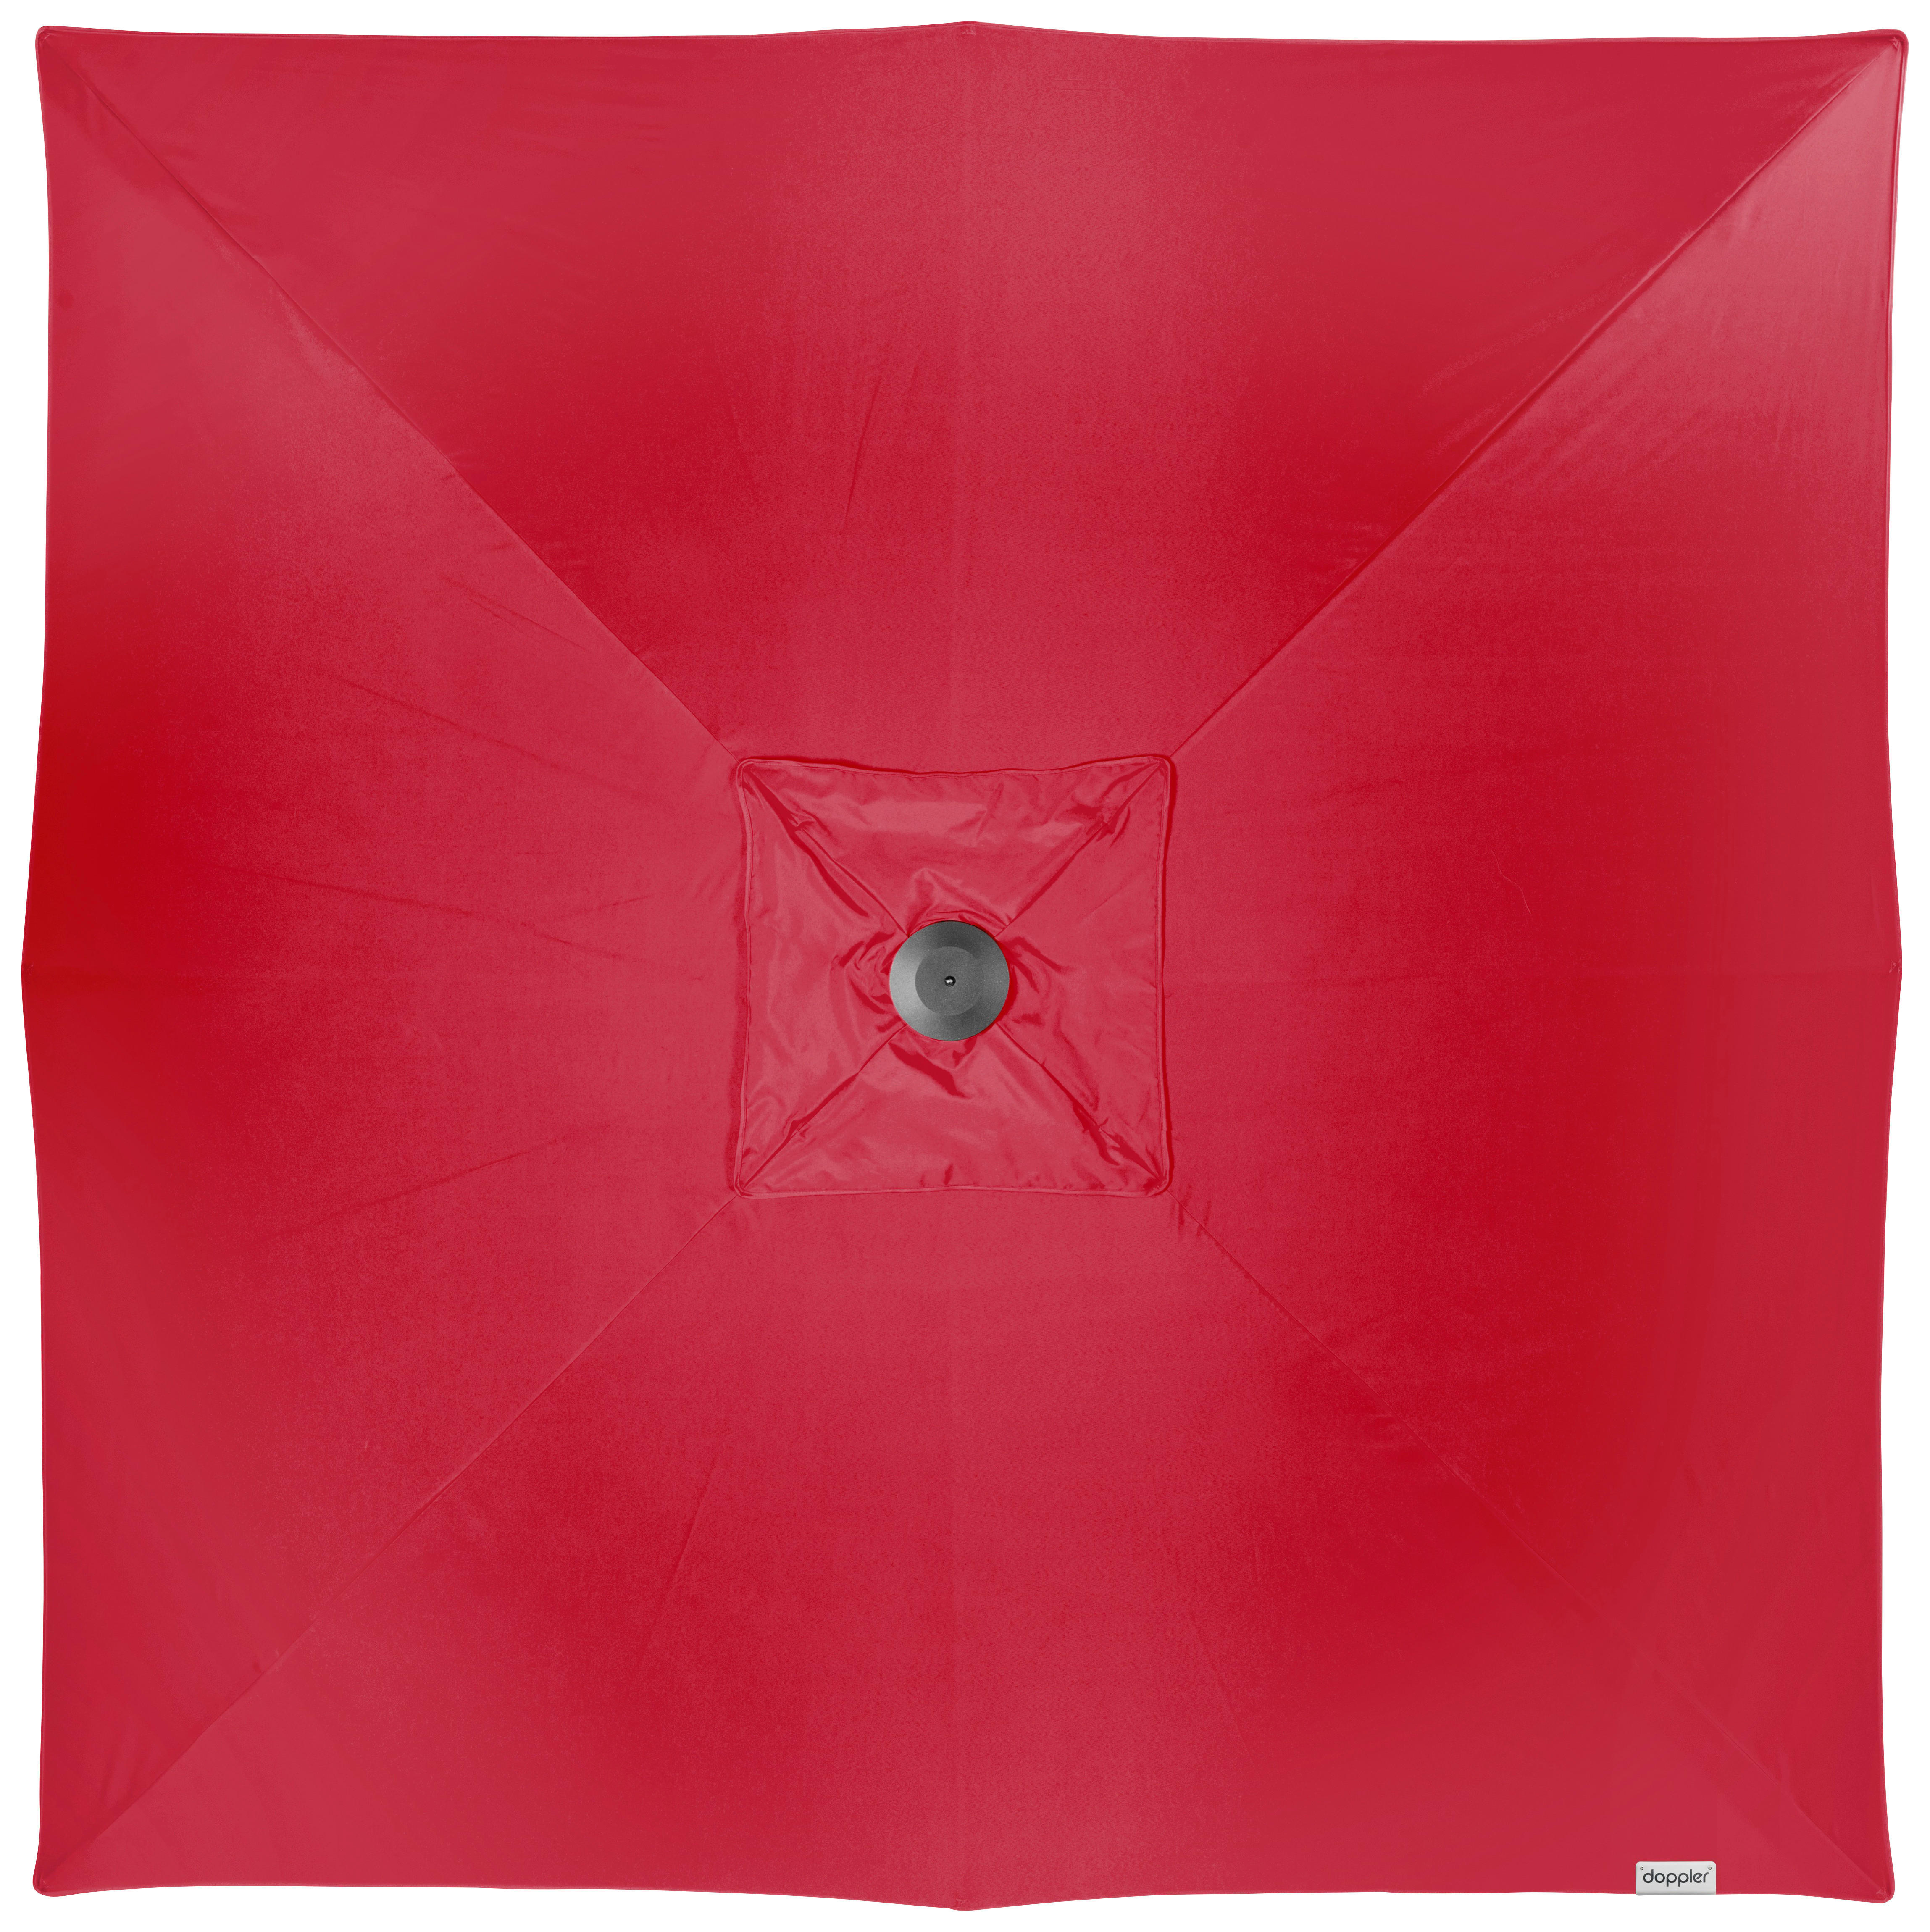 SONNENSCHIRM 300X300 cm Rot  - Silberfarben/Rot, Basics, Textil/Metall (300/300cm) - Doppler